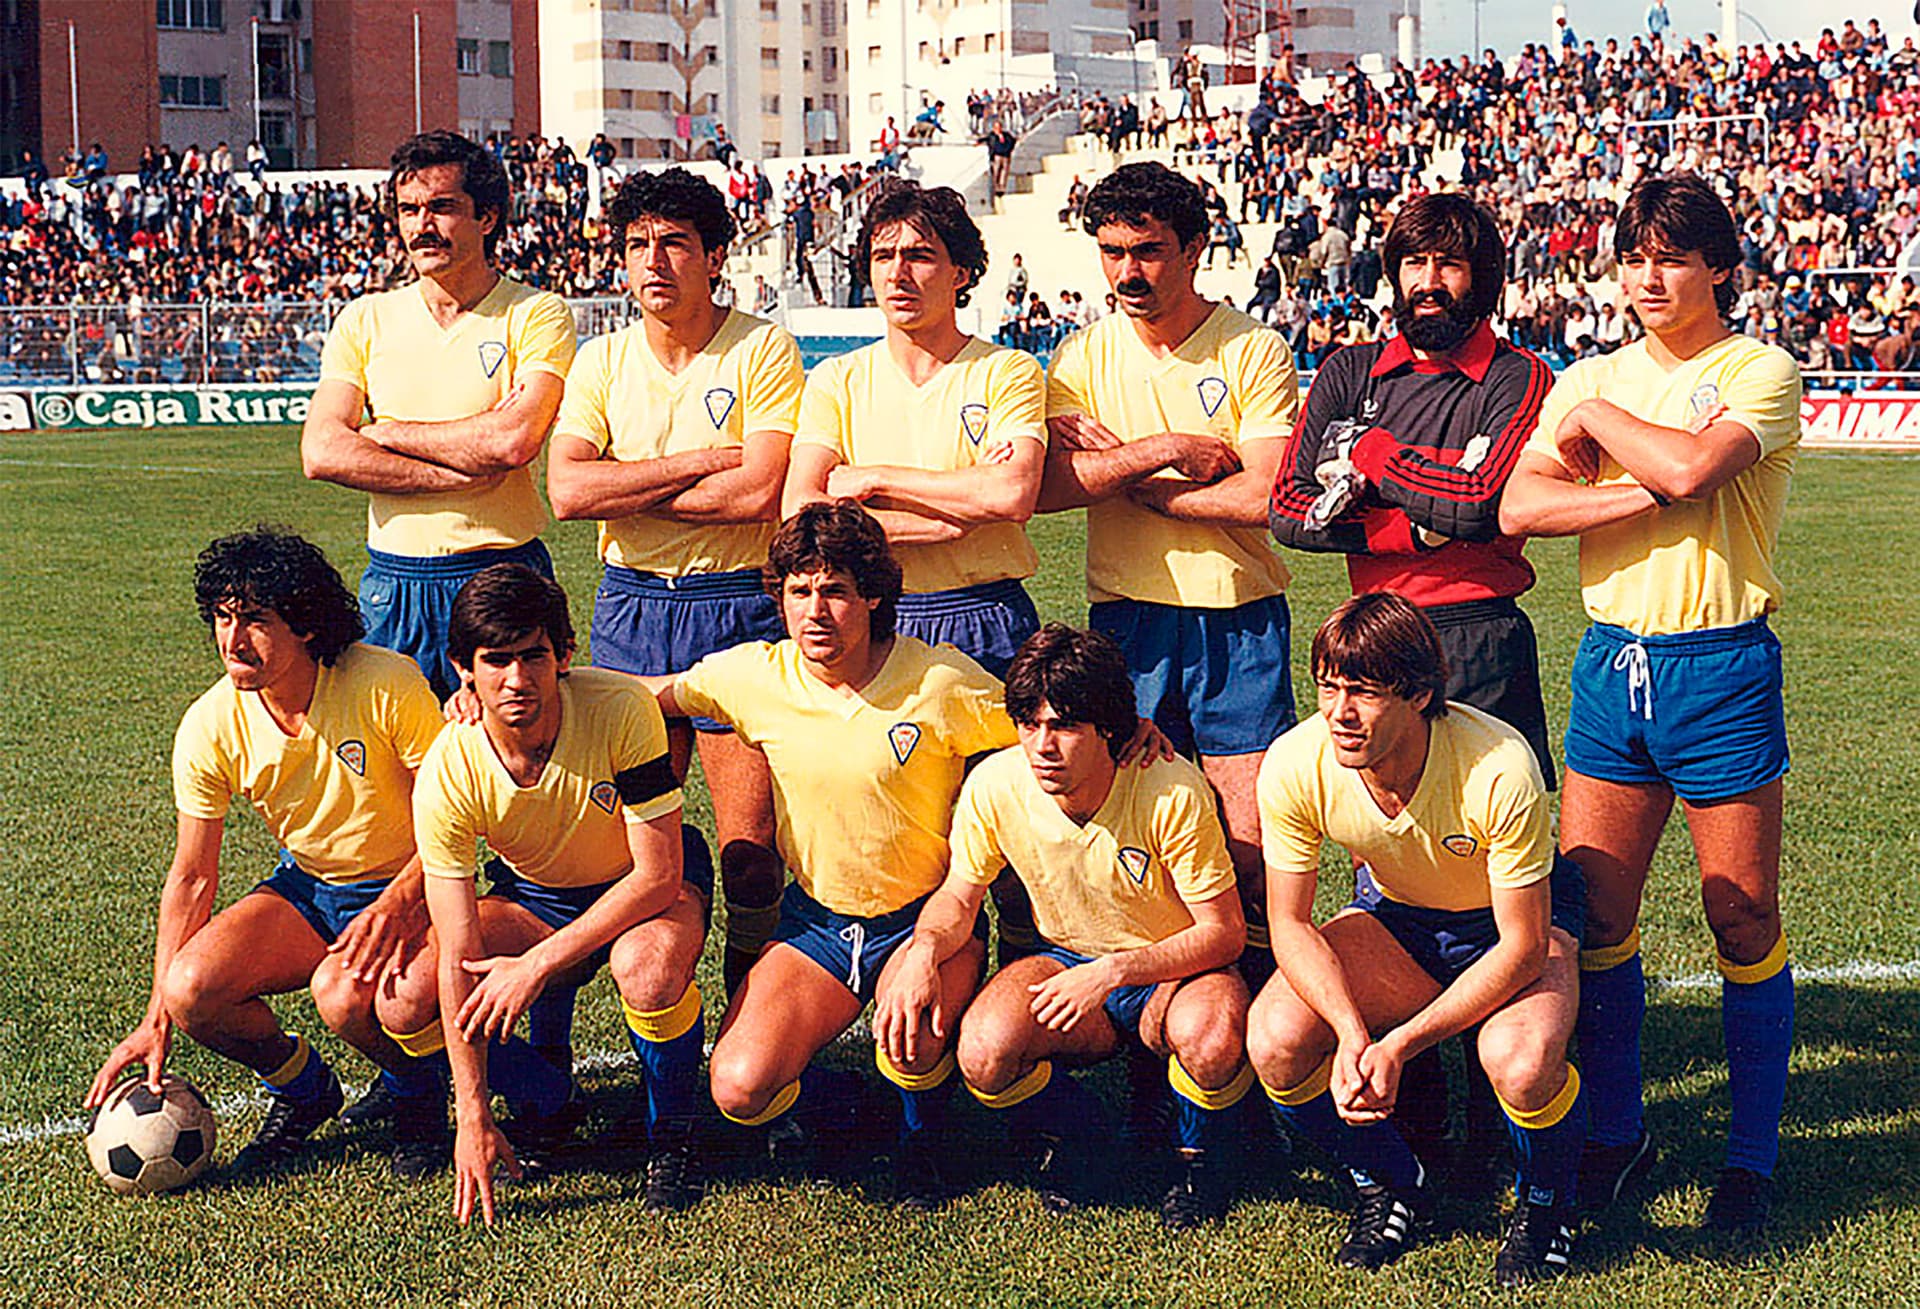 Formación del Cádiz en la temporada 1982/83. De izquierda a derecha: Vojinović, Amarillo, Manolito, Linares, Claudio, Chano (arriba); González, Escobar, Dieguito, Mejías II y Mejías I (abajo)./ Cádiz CF